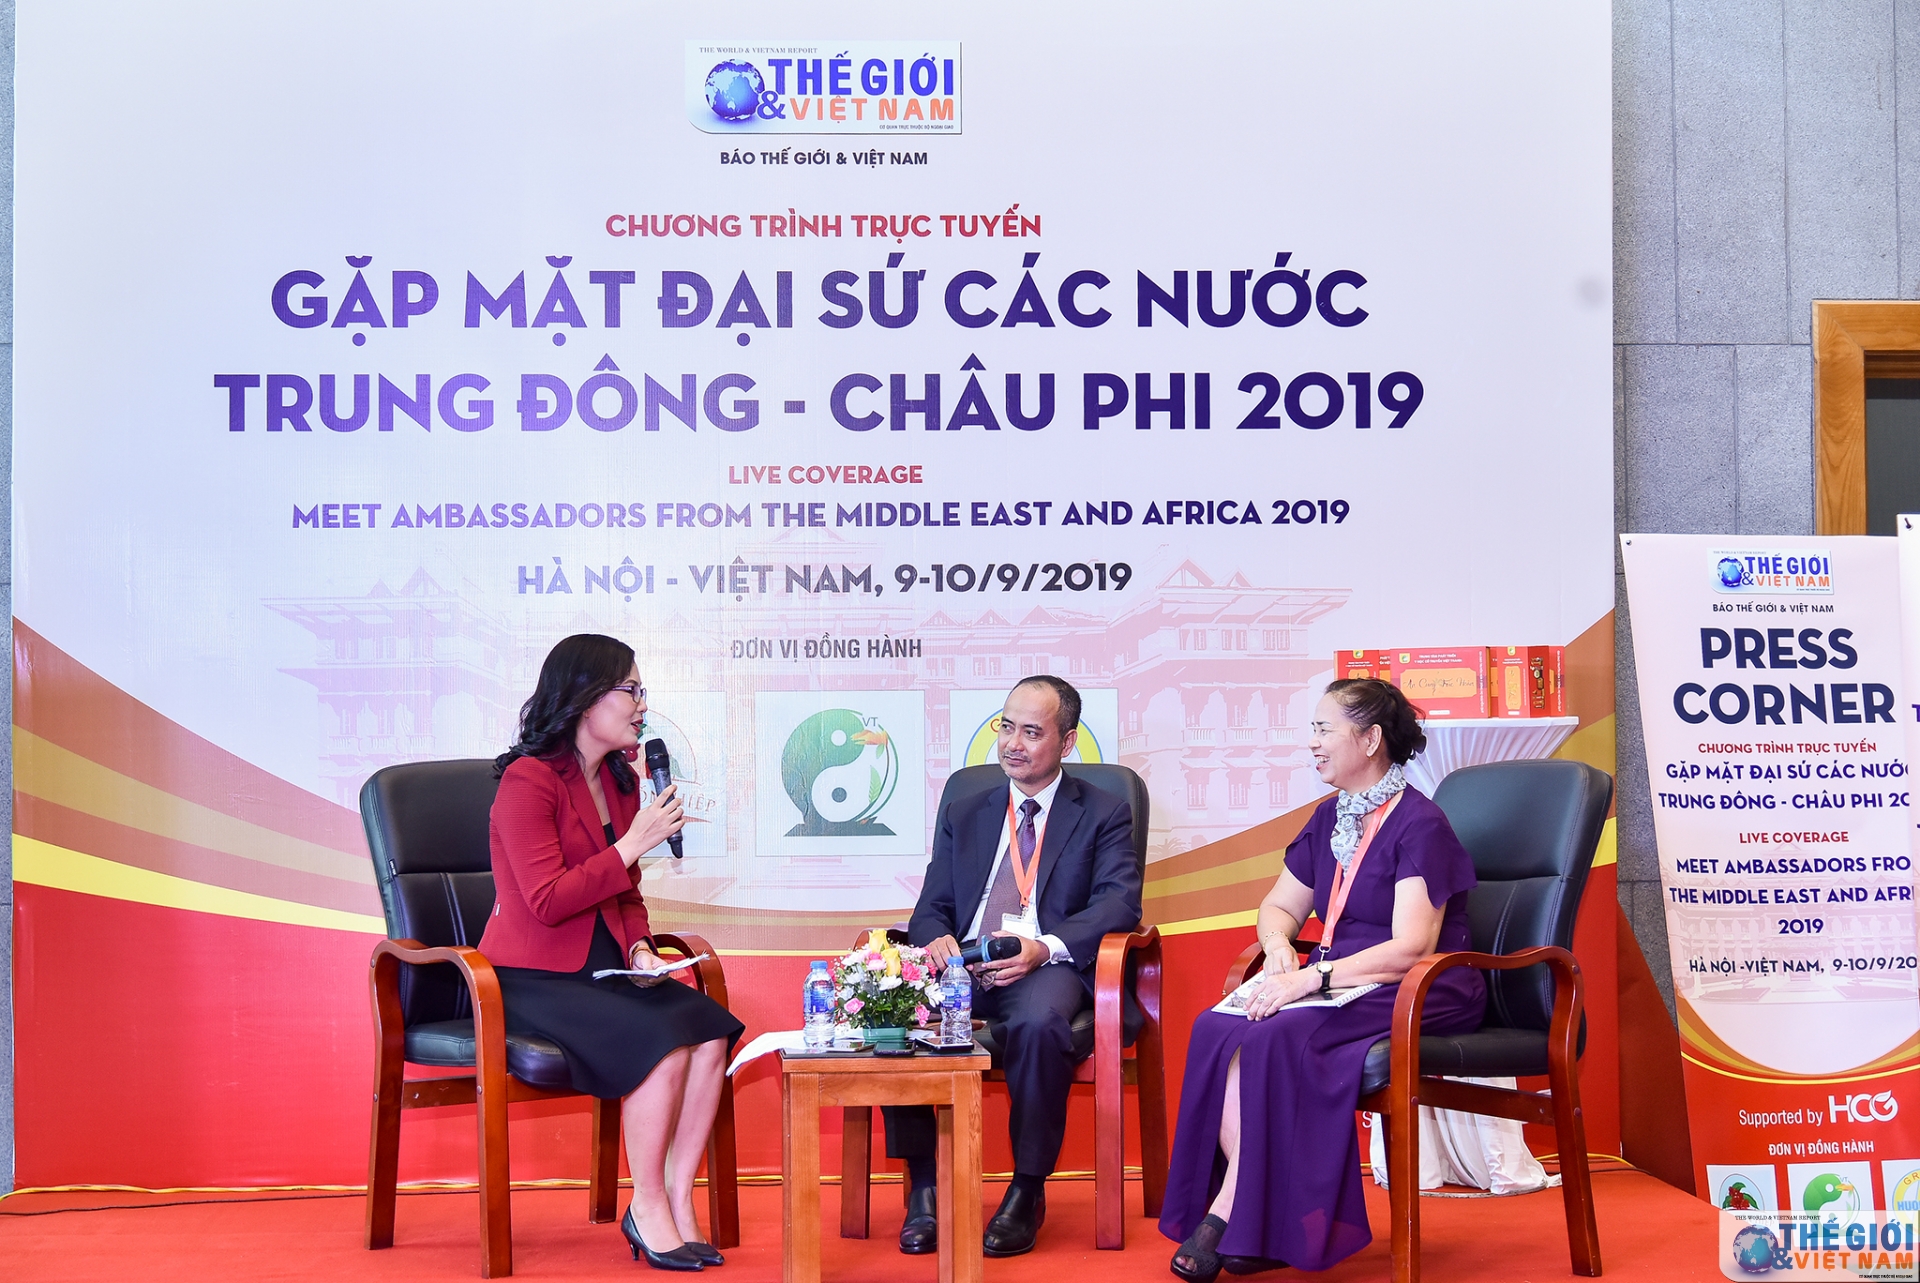 chuong trinh truc tuyen gap mat dai su cac nuoc trung dong chau phi 2019